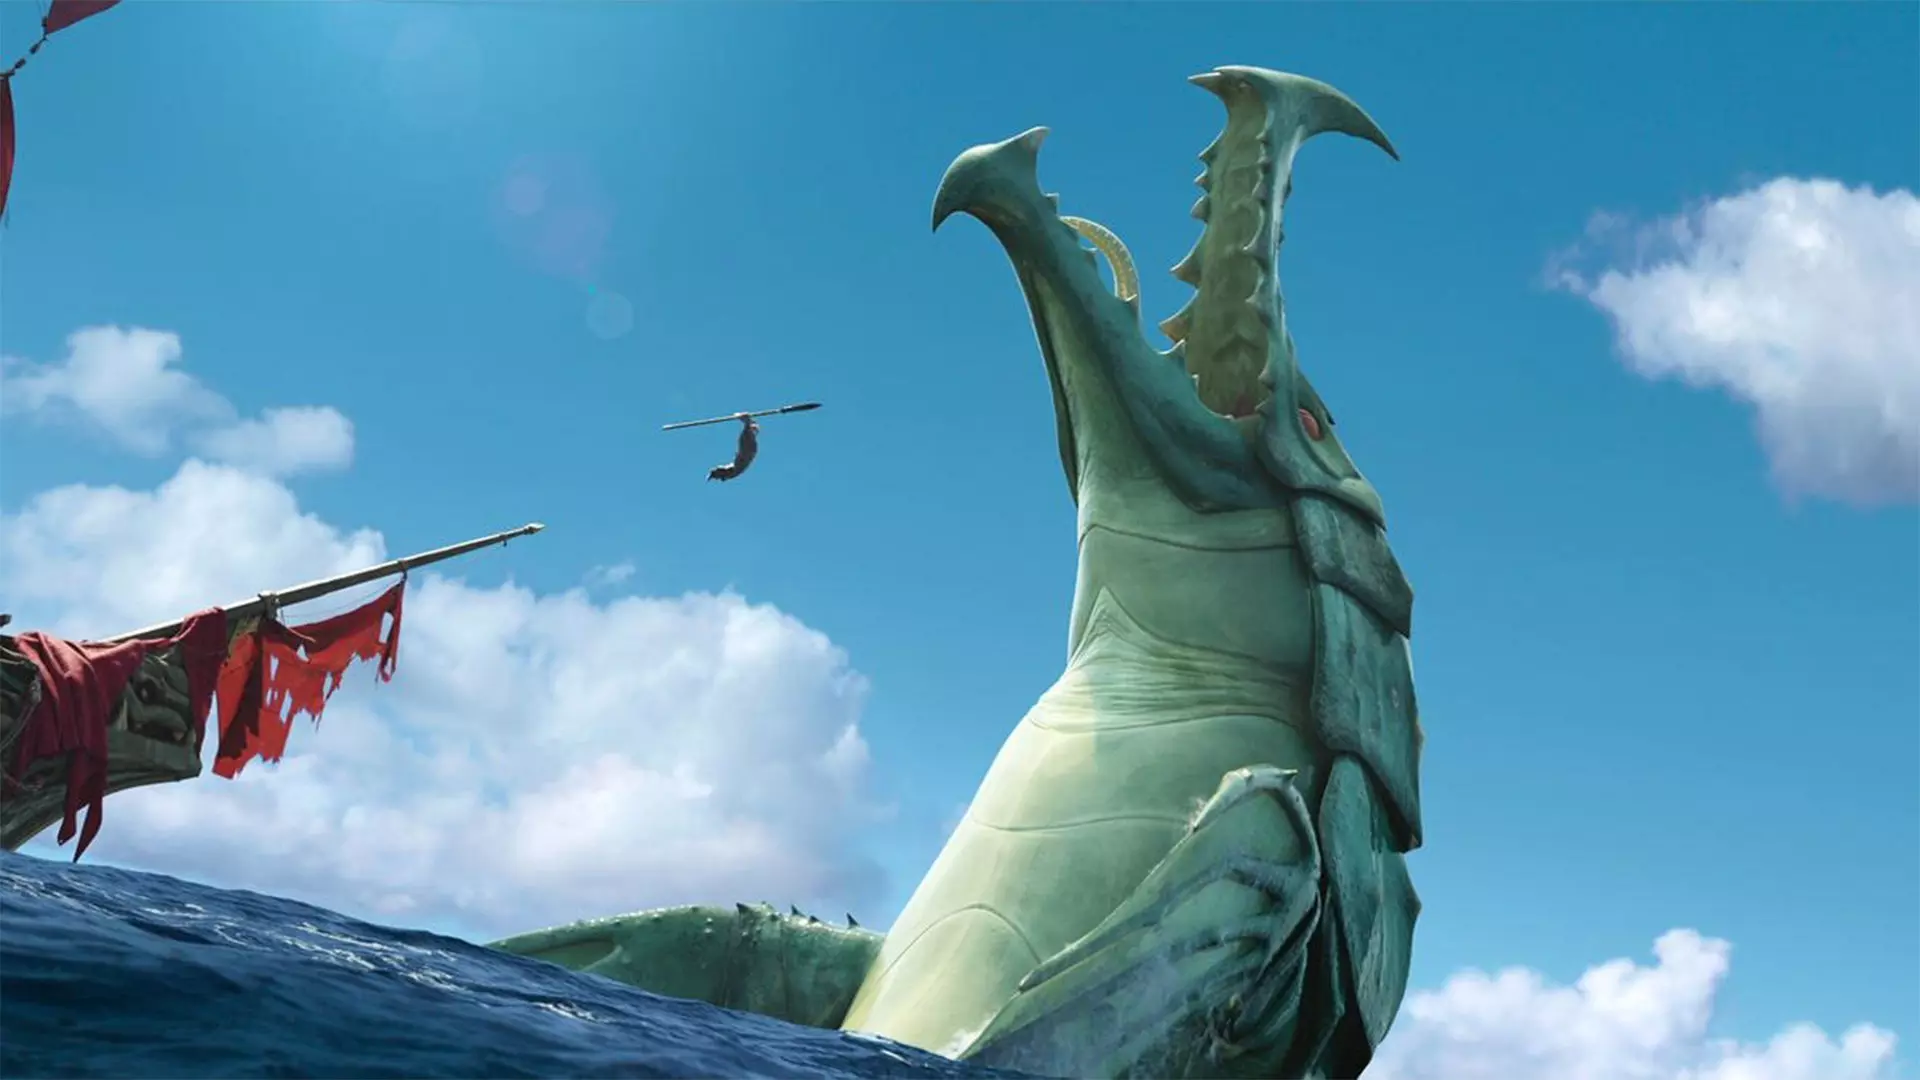 اولین تریلر انیمیشن جدید نتفلیکس و کارگردان Big Hero 6 با نام The Sea Beast